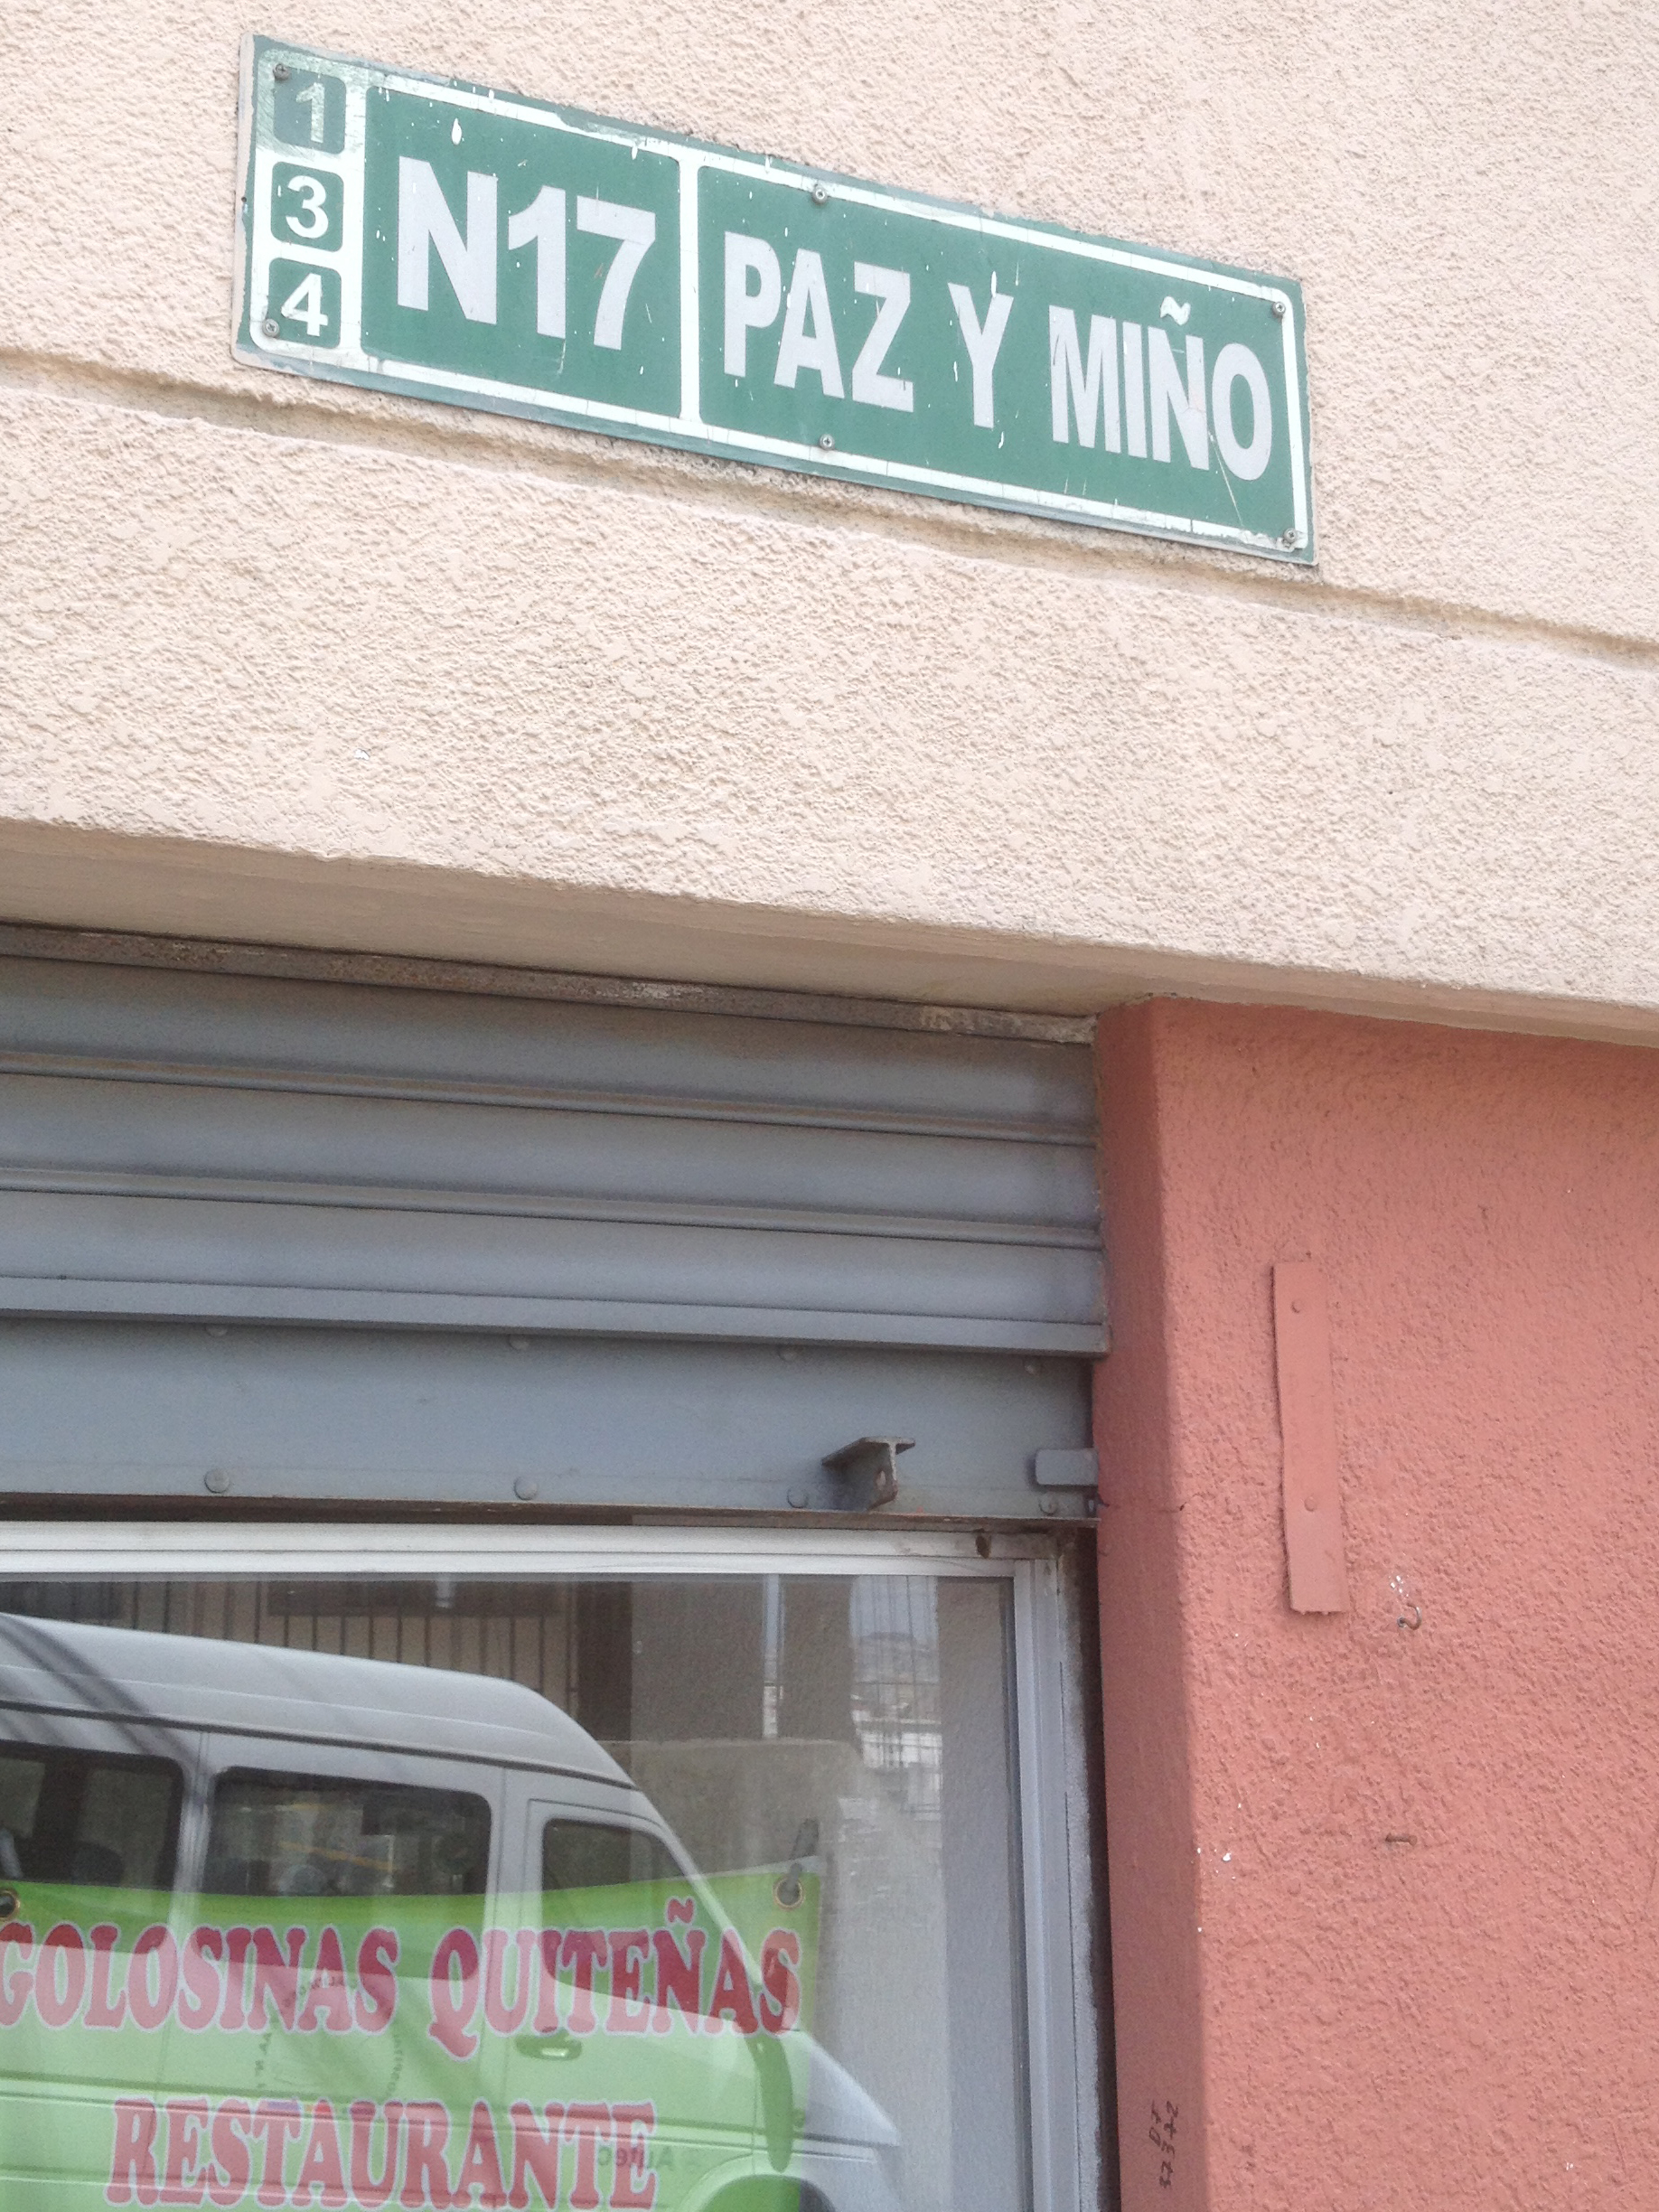 "Paz y Miño" street sign in Quito, Ecuador, in honour of Gen. Telmo Paz y  Miño.